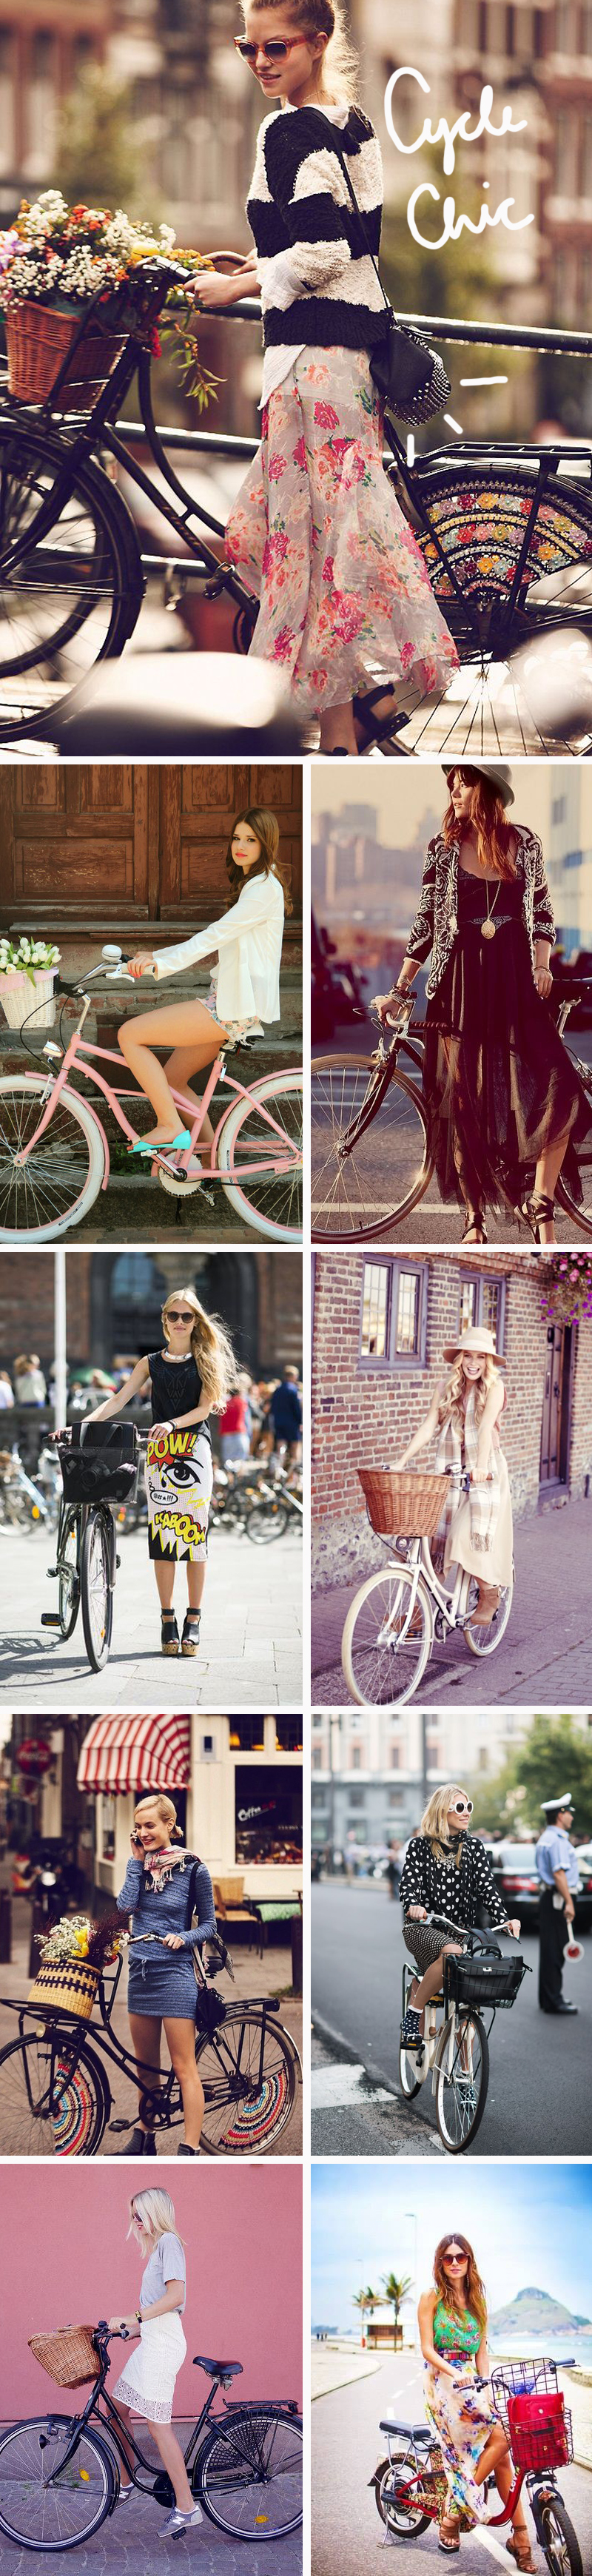 Tendência Cycle Chic andar de bicicleta bem vestido - dicas de moda e estilo por Deisi Remus